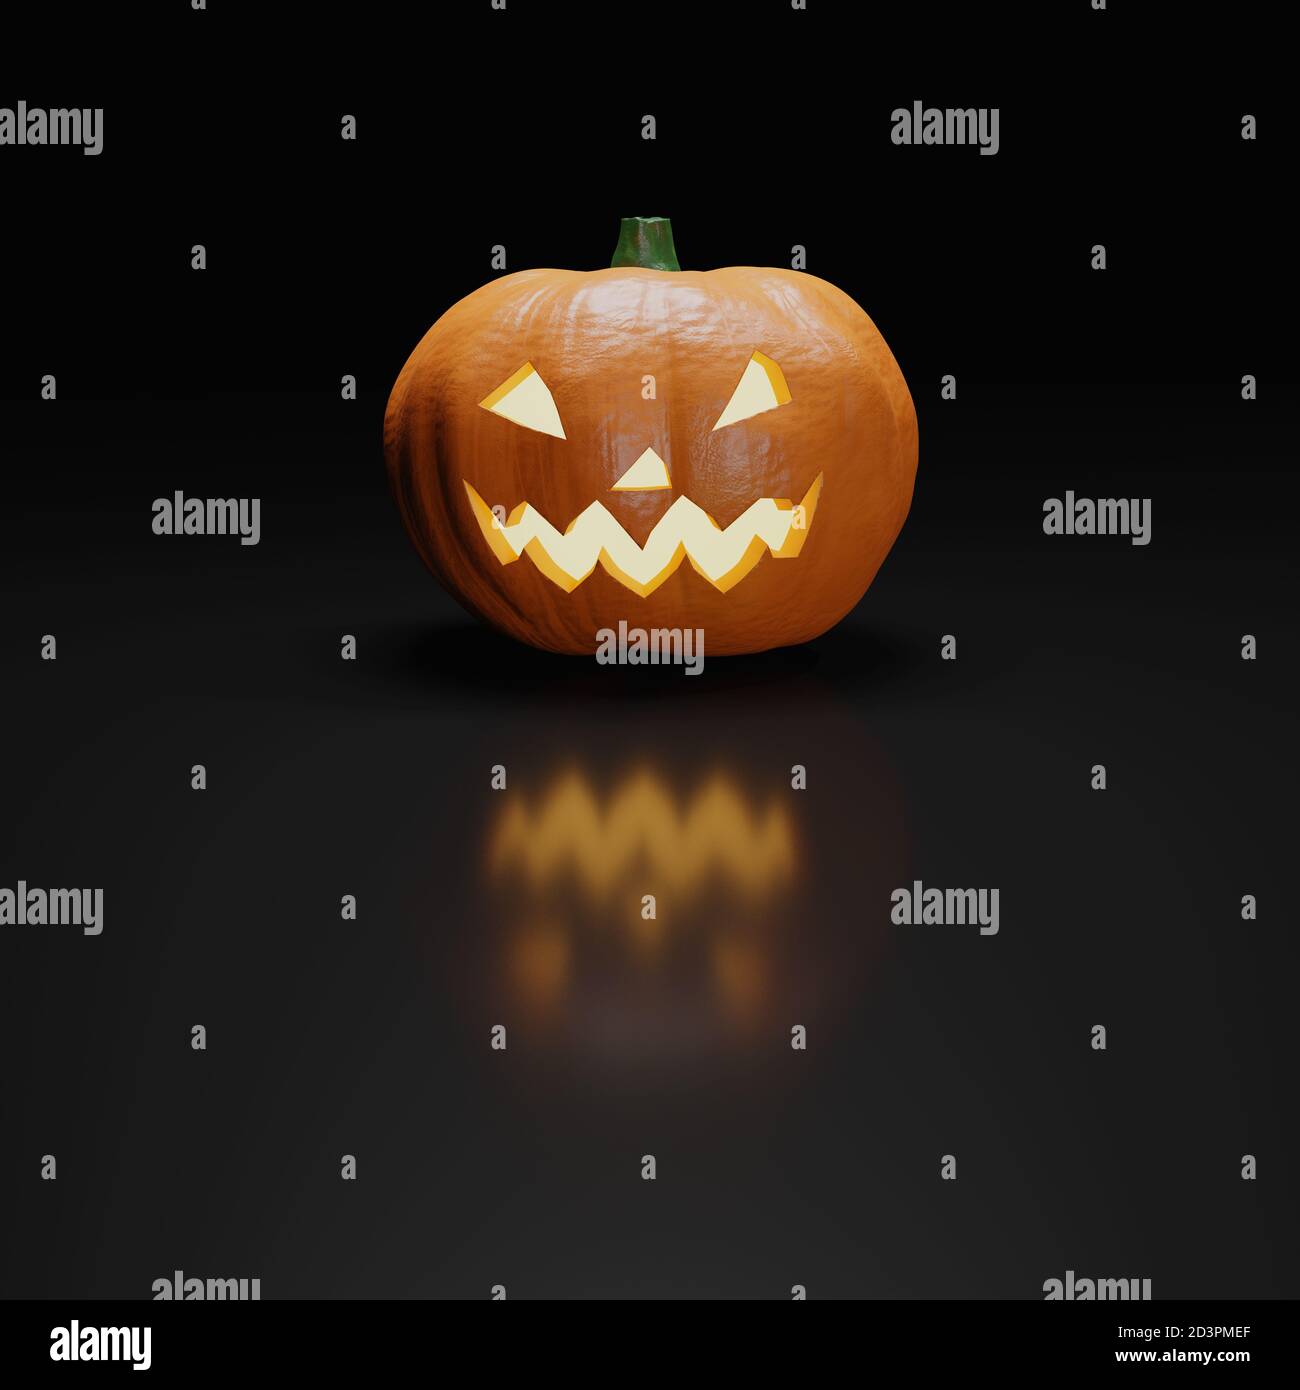 Halloween Pumpkin isolated on black background. 3d illustration. Stock Photo